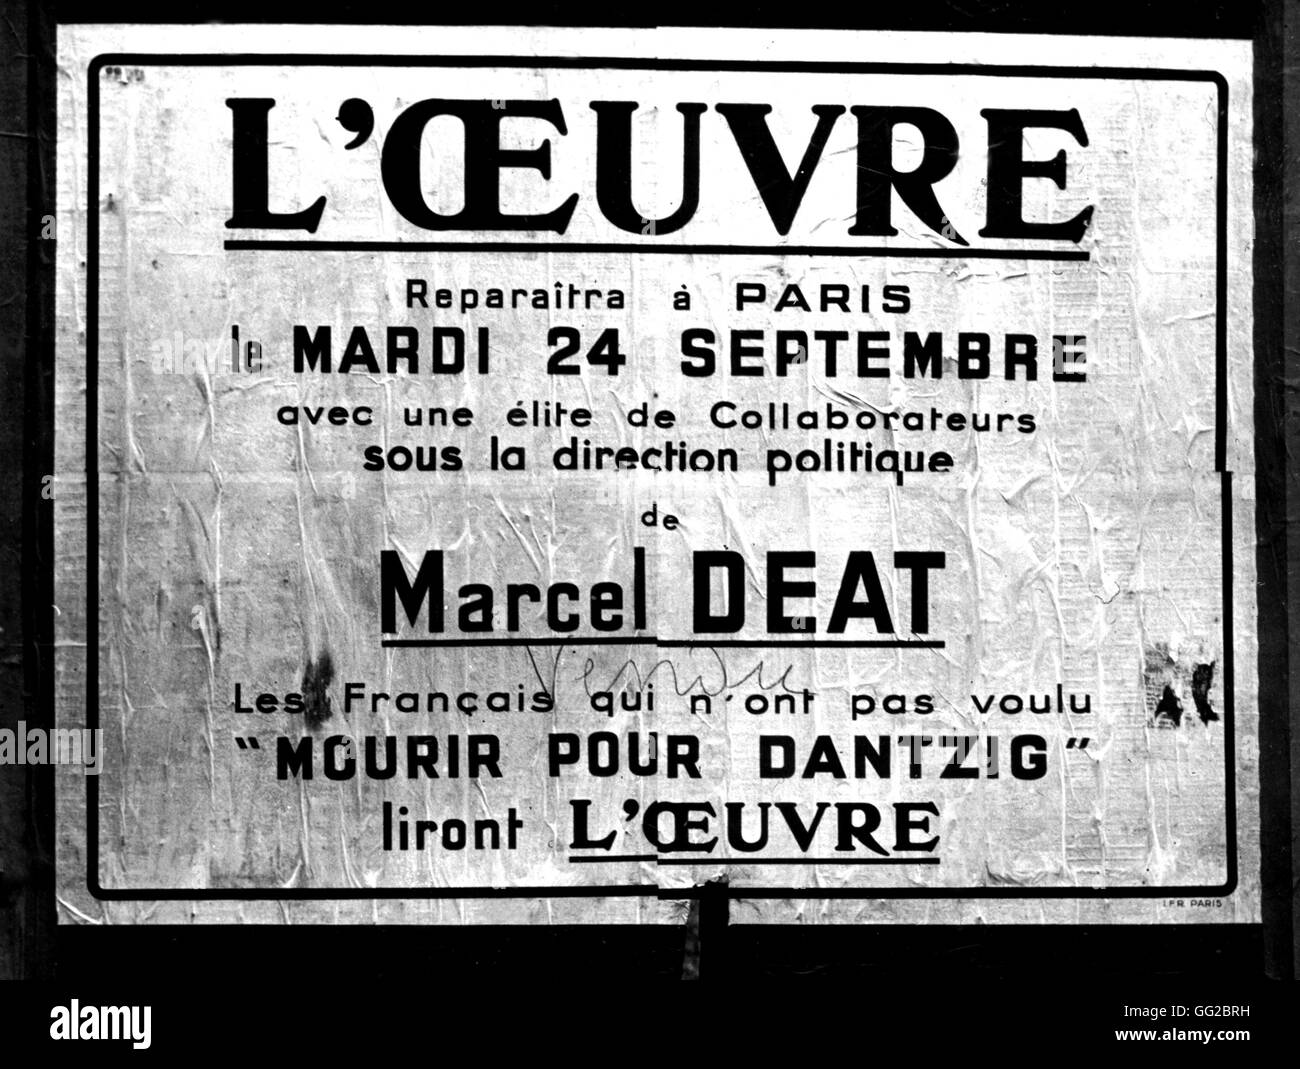 Poster pubblicitario per il quotidiano 'L'Oeuvre" da Marcel Deat, fondatore della R.N.P. (Popolare Rally nazionale) ottobre 1940 FRANCIA - SECONDA GUERRA MONDIALE Foto Stock